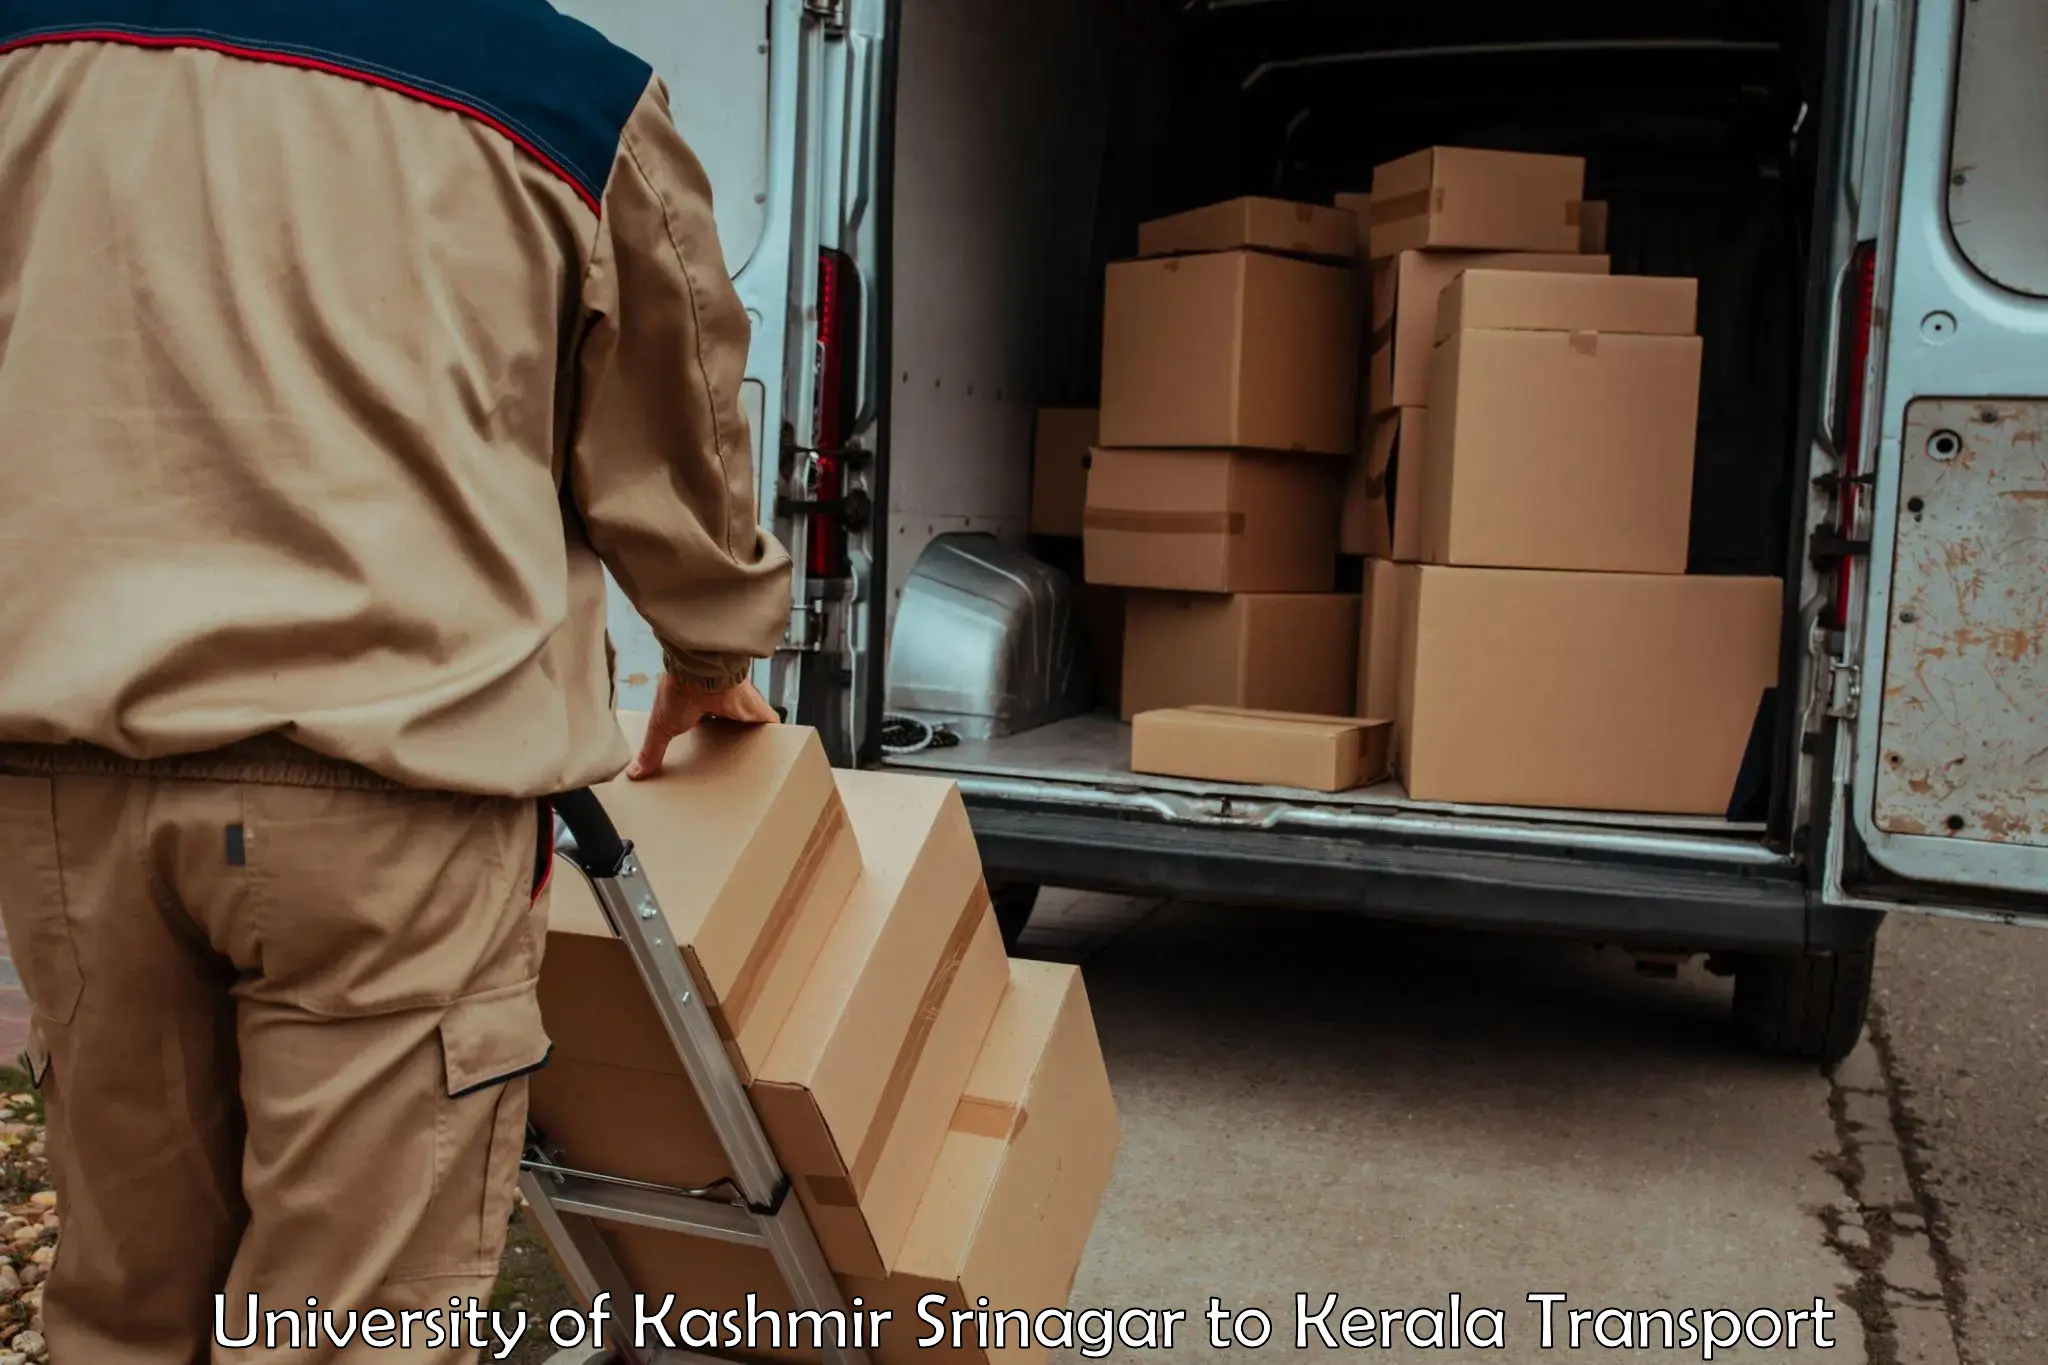 Road transport online services University of Kashmir Srinagar to Kozhencherry